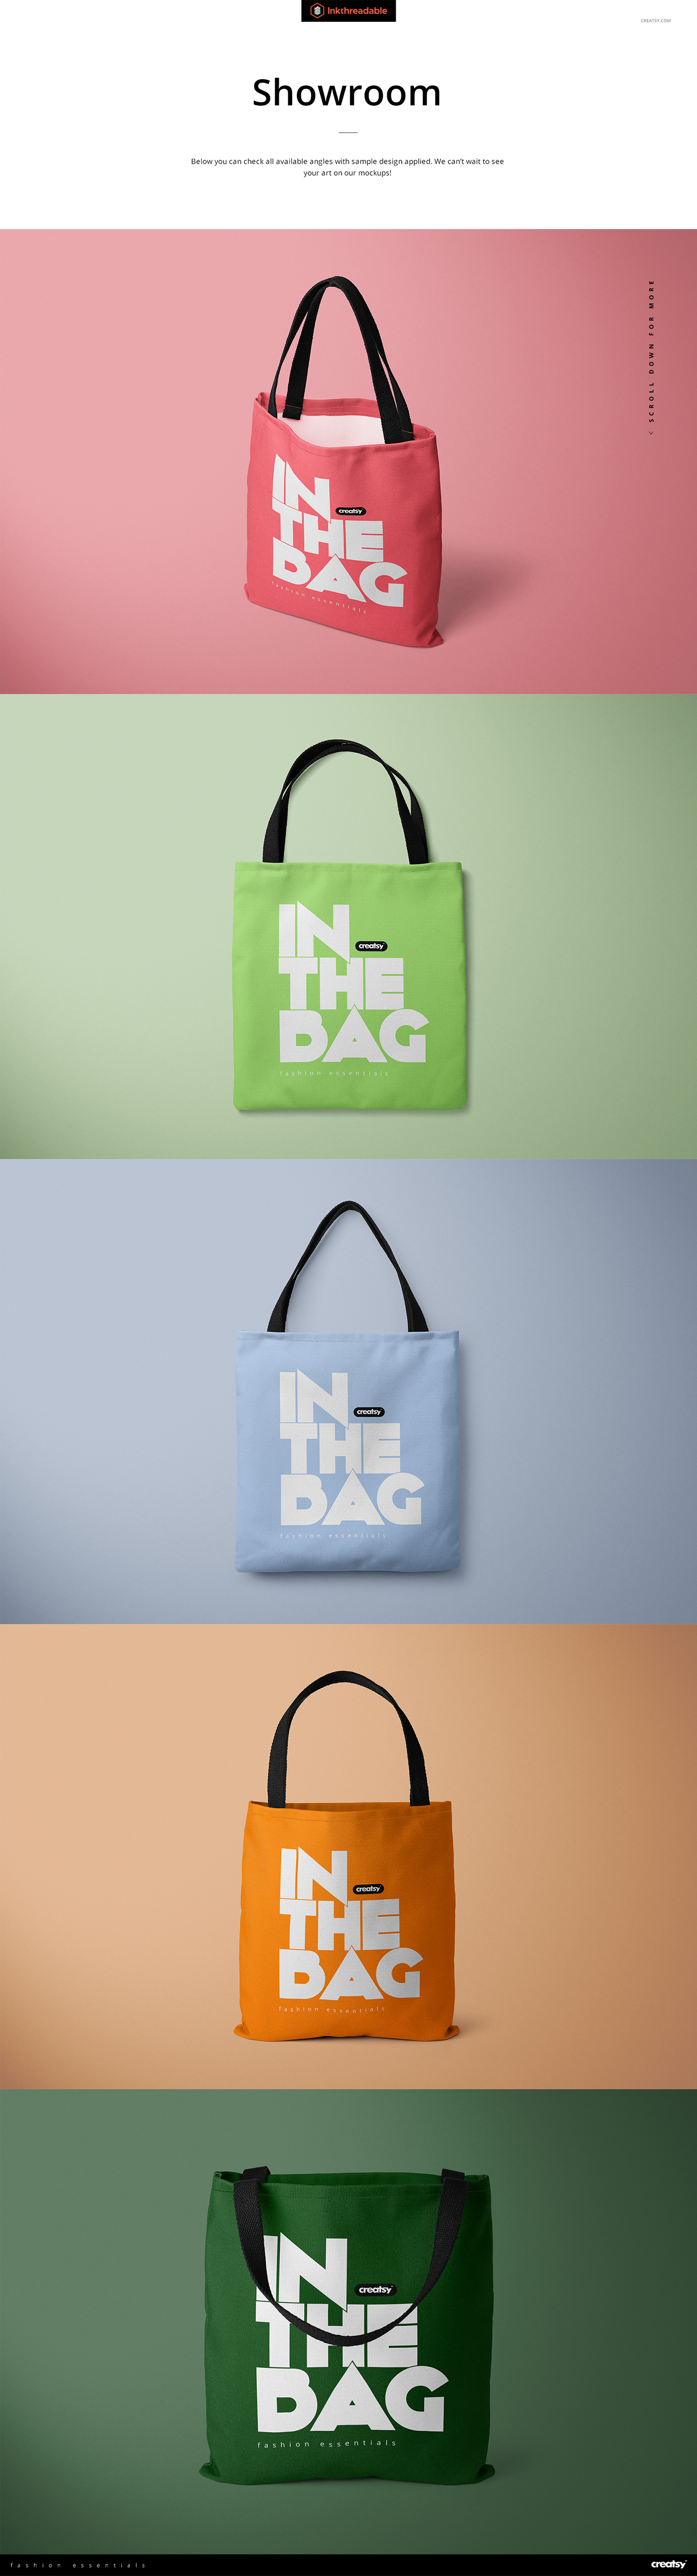 Download Polyester Tote Bag Mockup Set on Behance